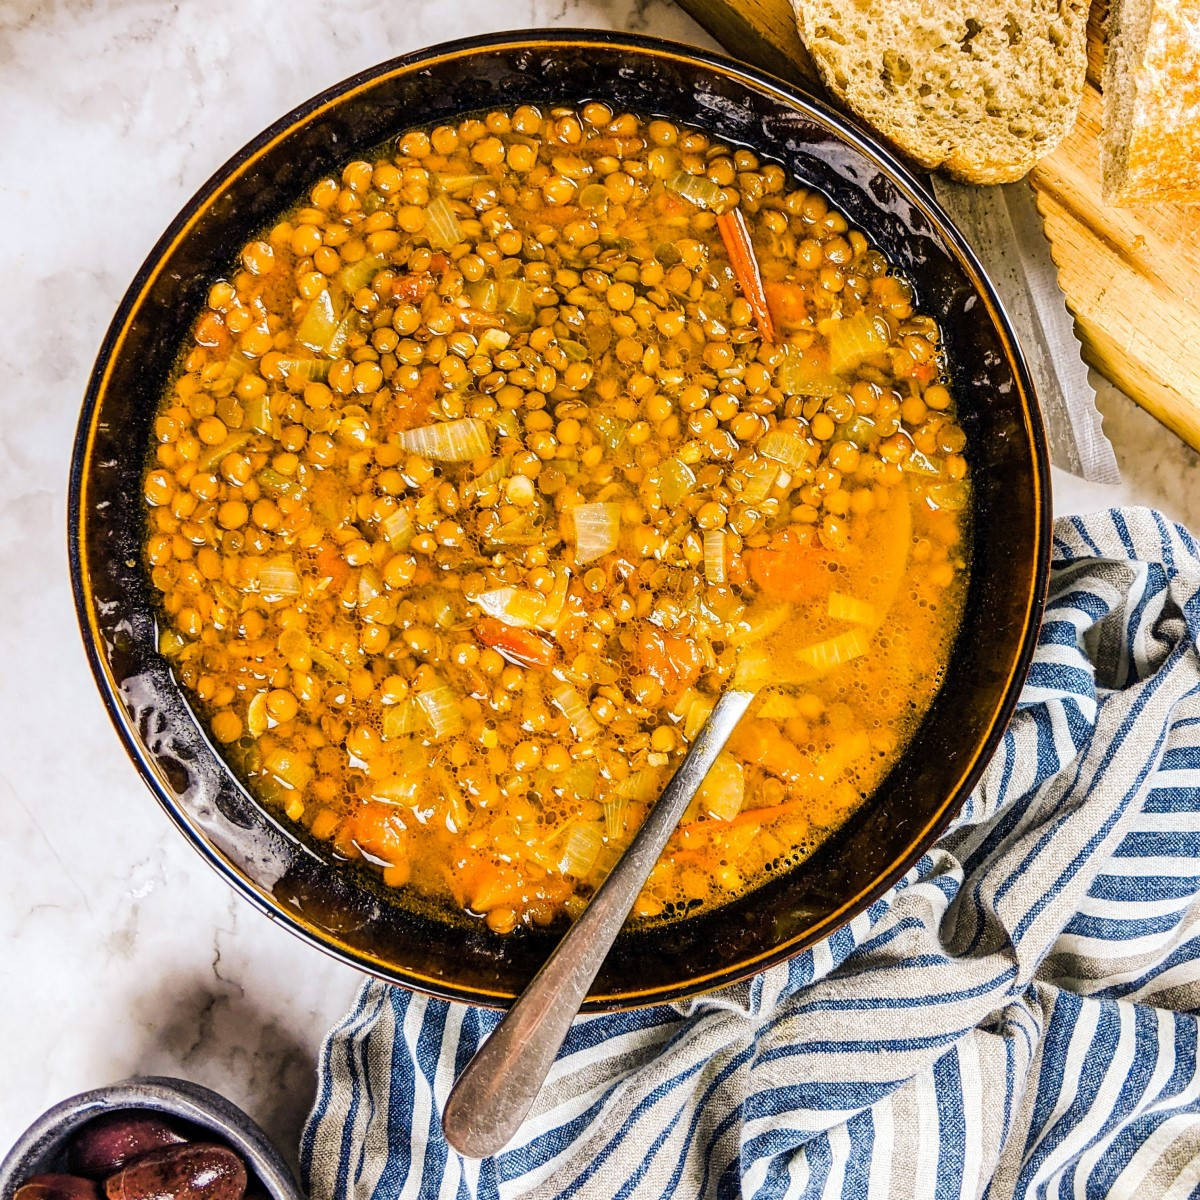 Mediterranean lentil soup served in black bowl next to olives and loaf of bread.